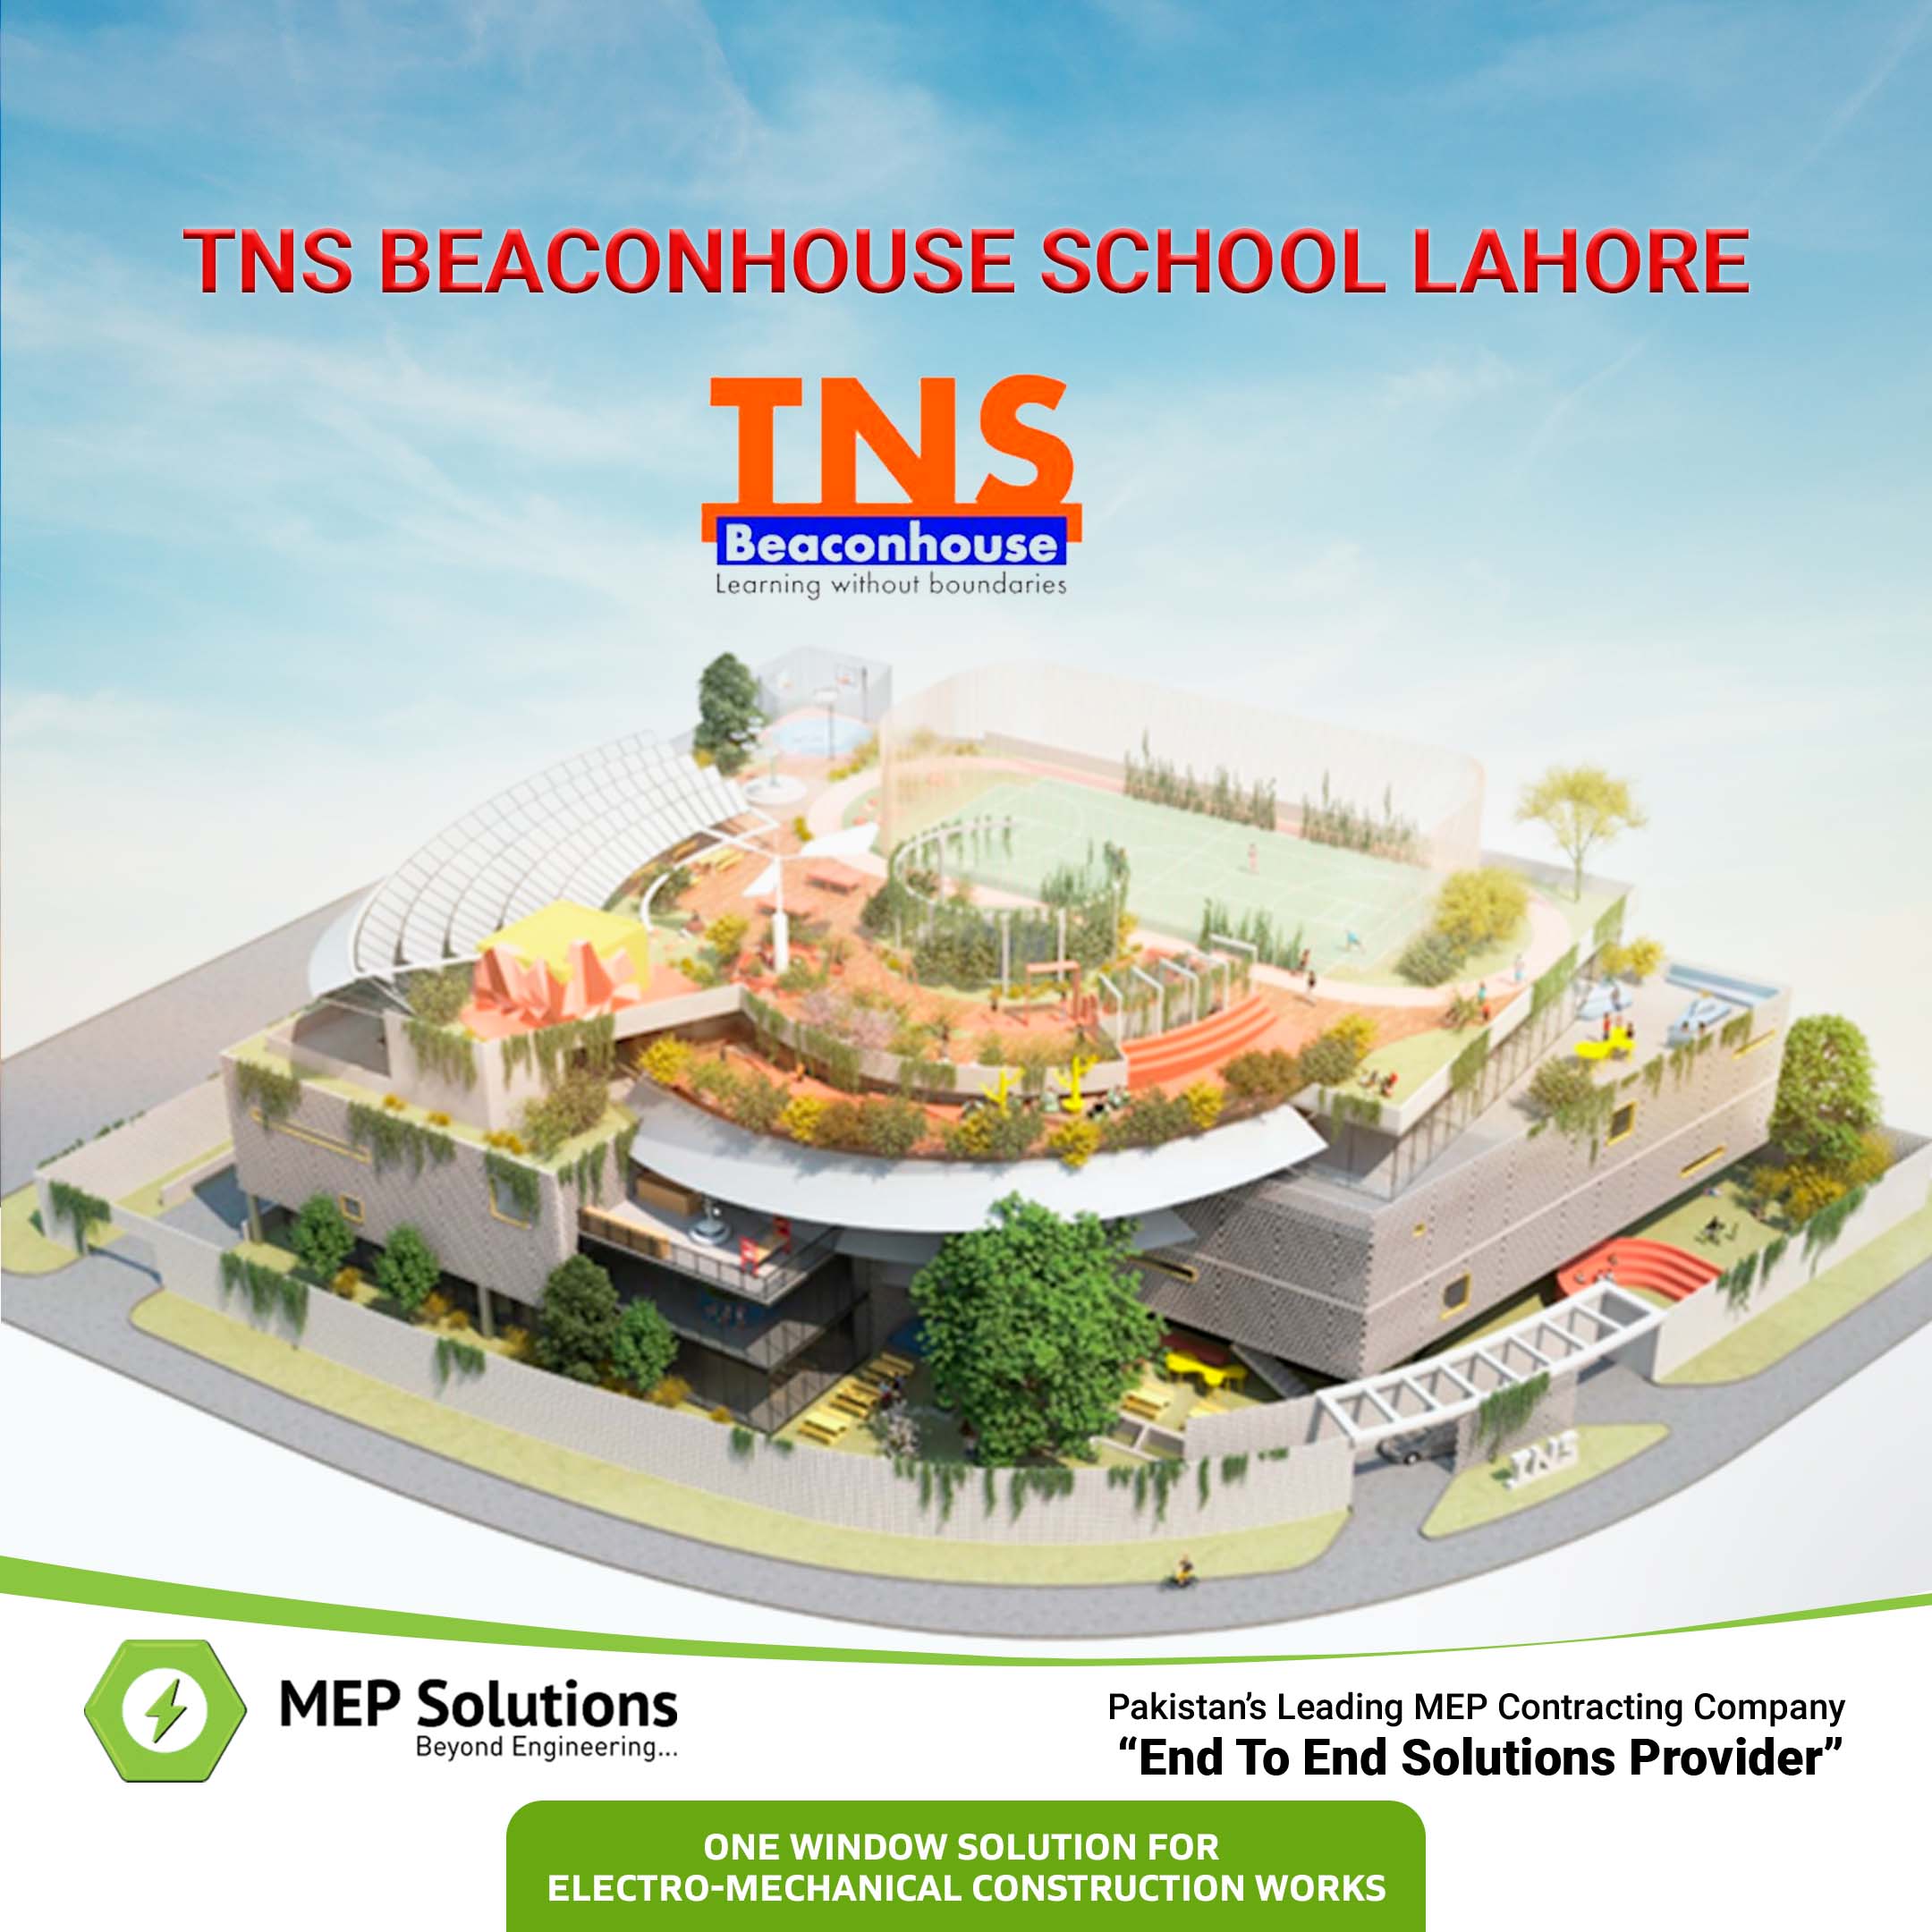 THE BEACONHOUSE SCHOOL LAHORE